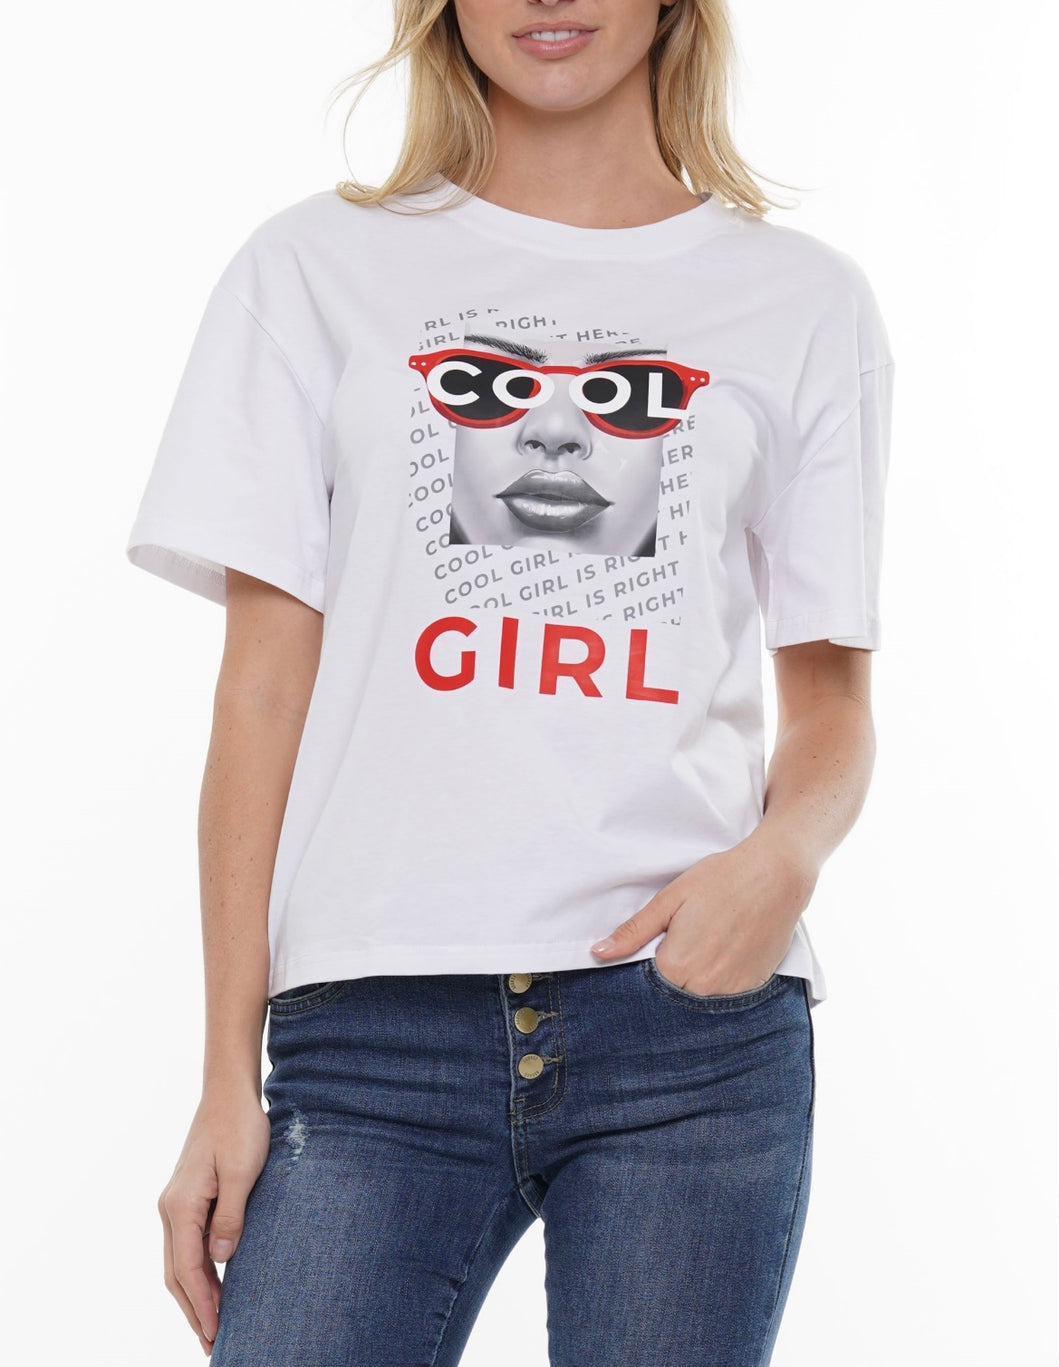 Cool Girl Shirt